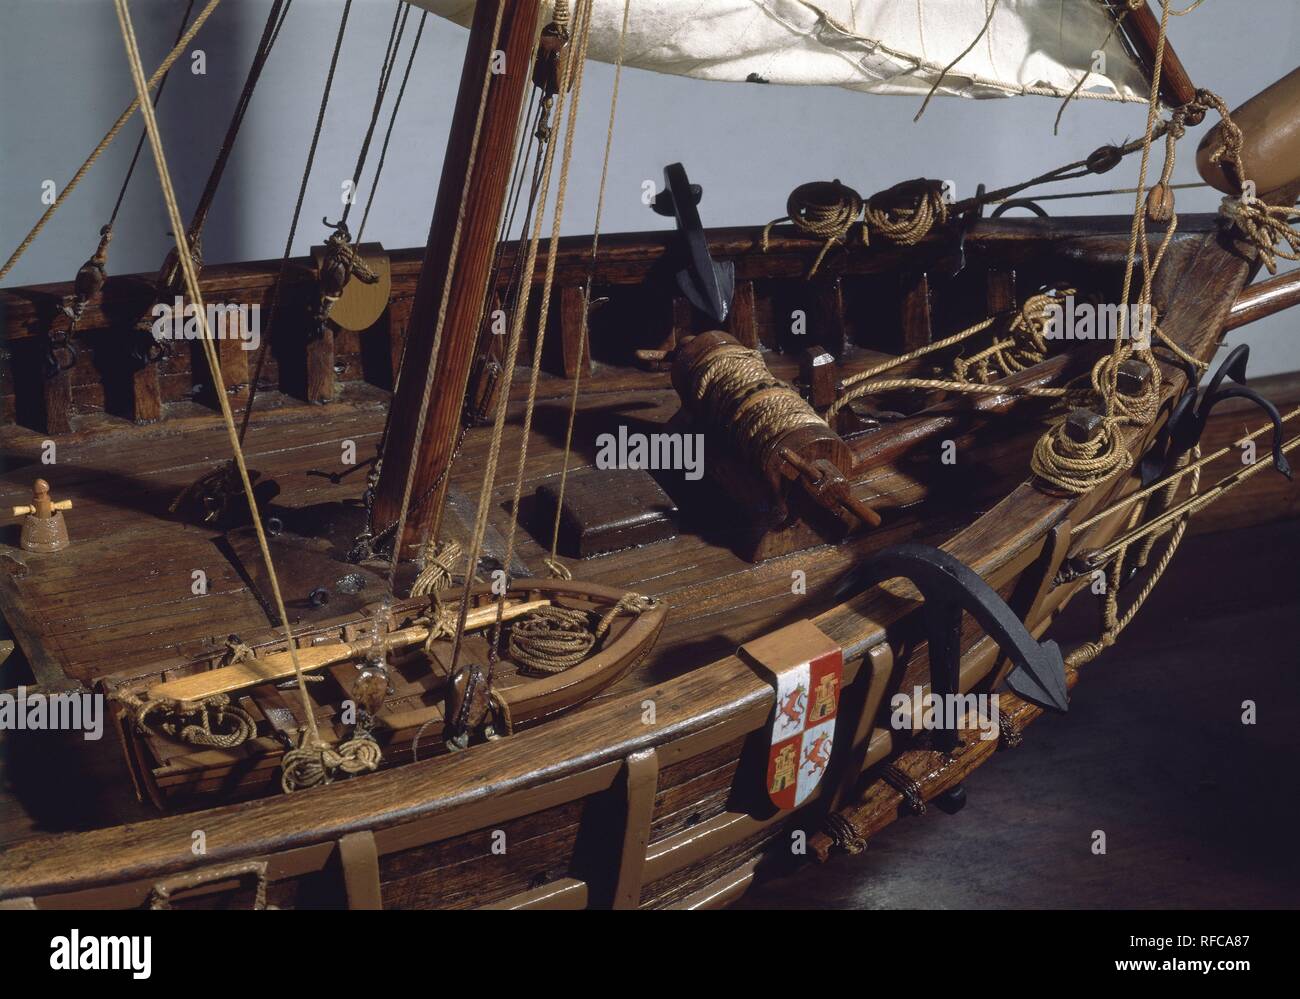 Maqueta barco de madera: Carabela Pinta - Barcos